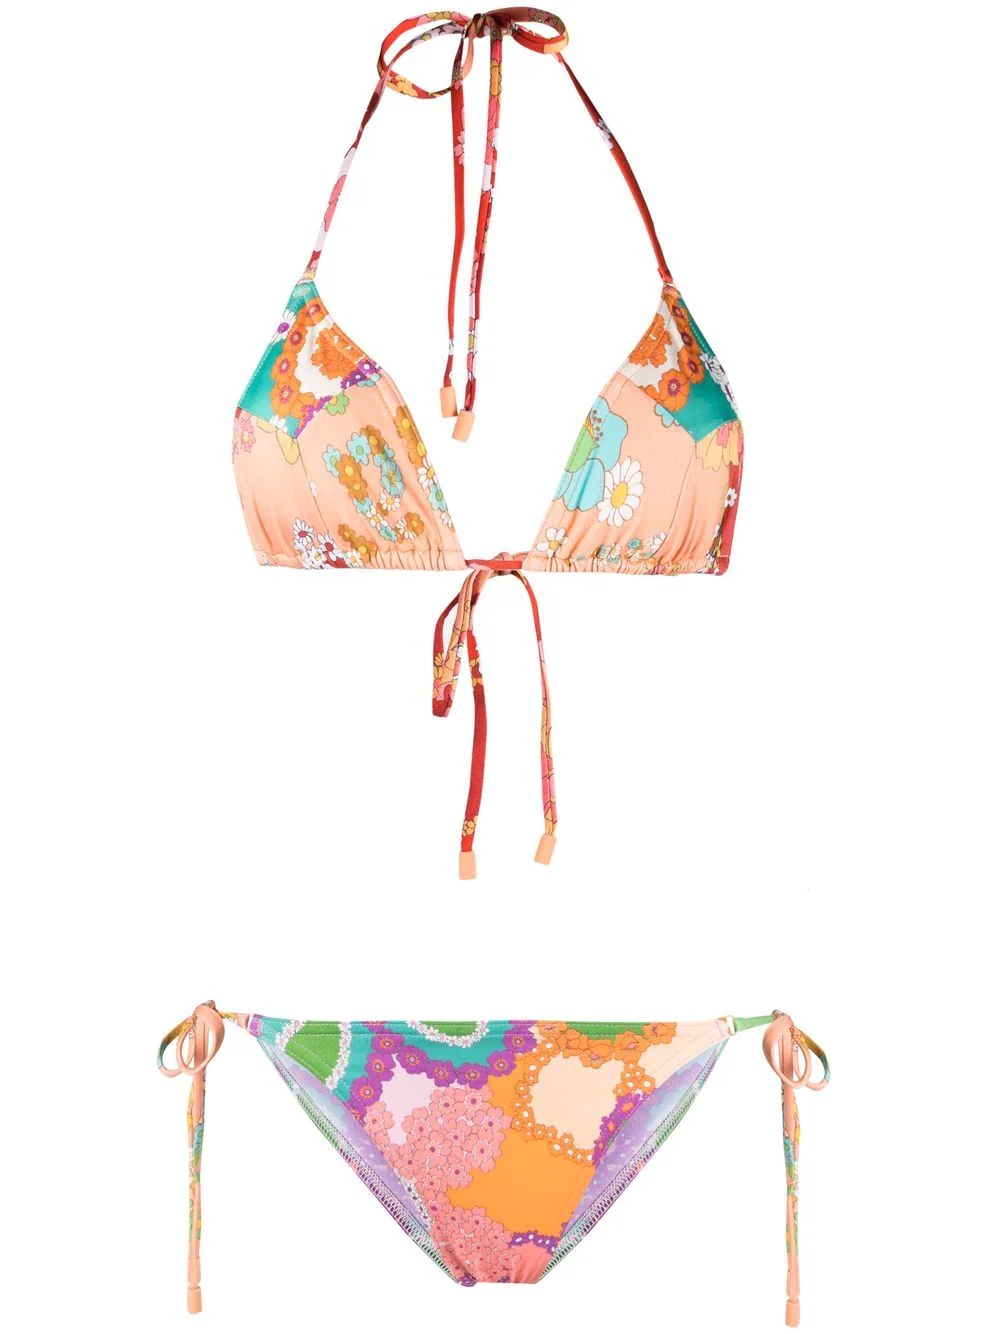 ZIMMERMANN
floral-print two-piece bikini farfetch